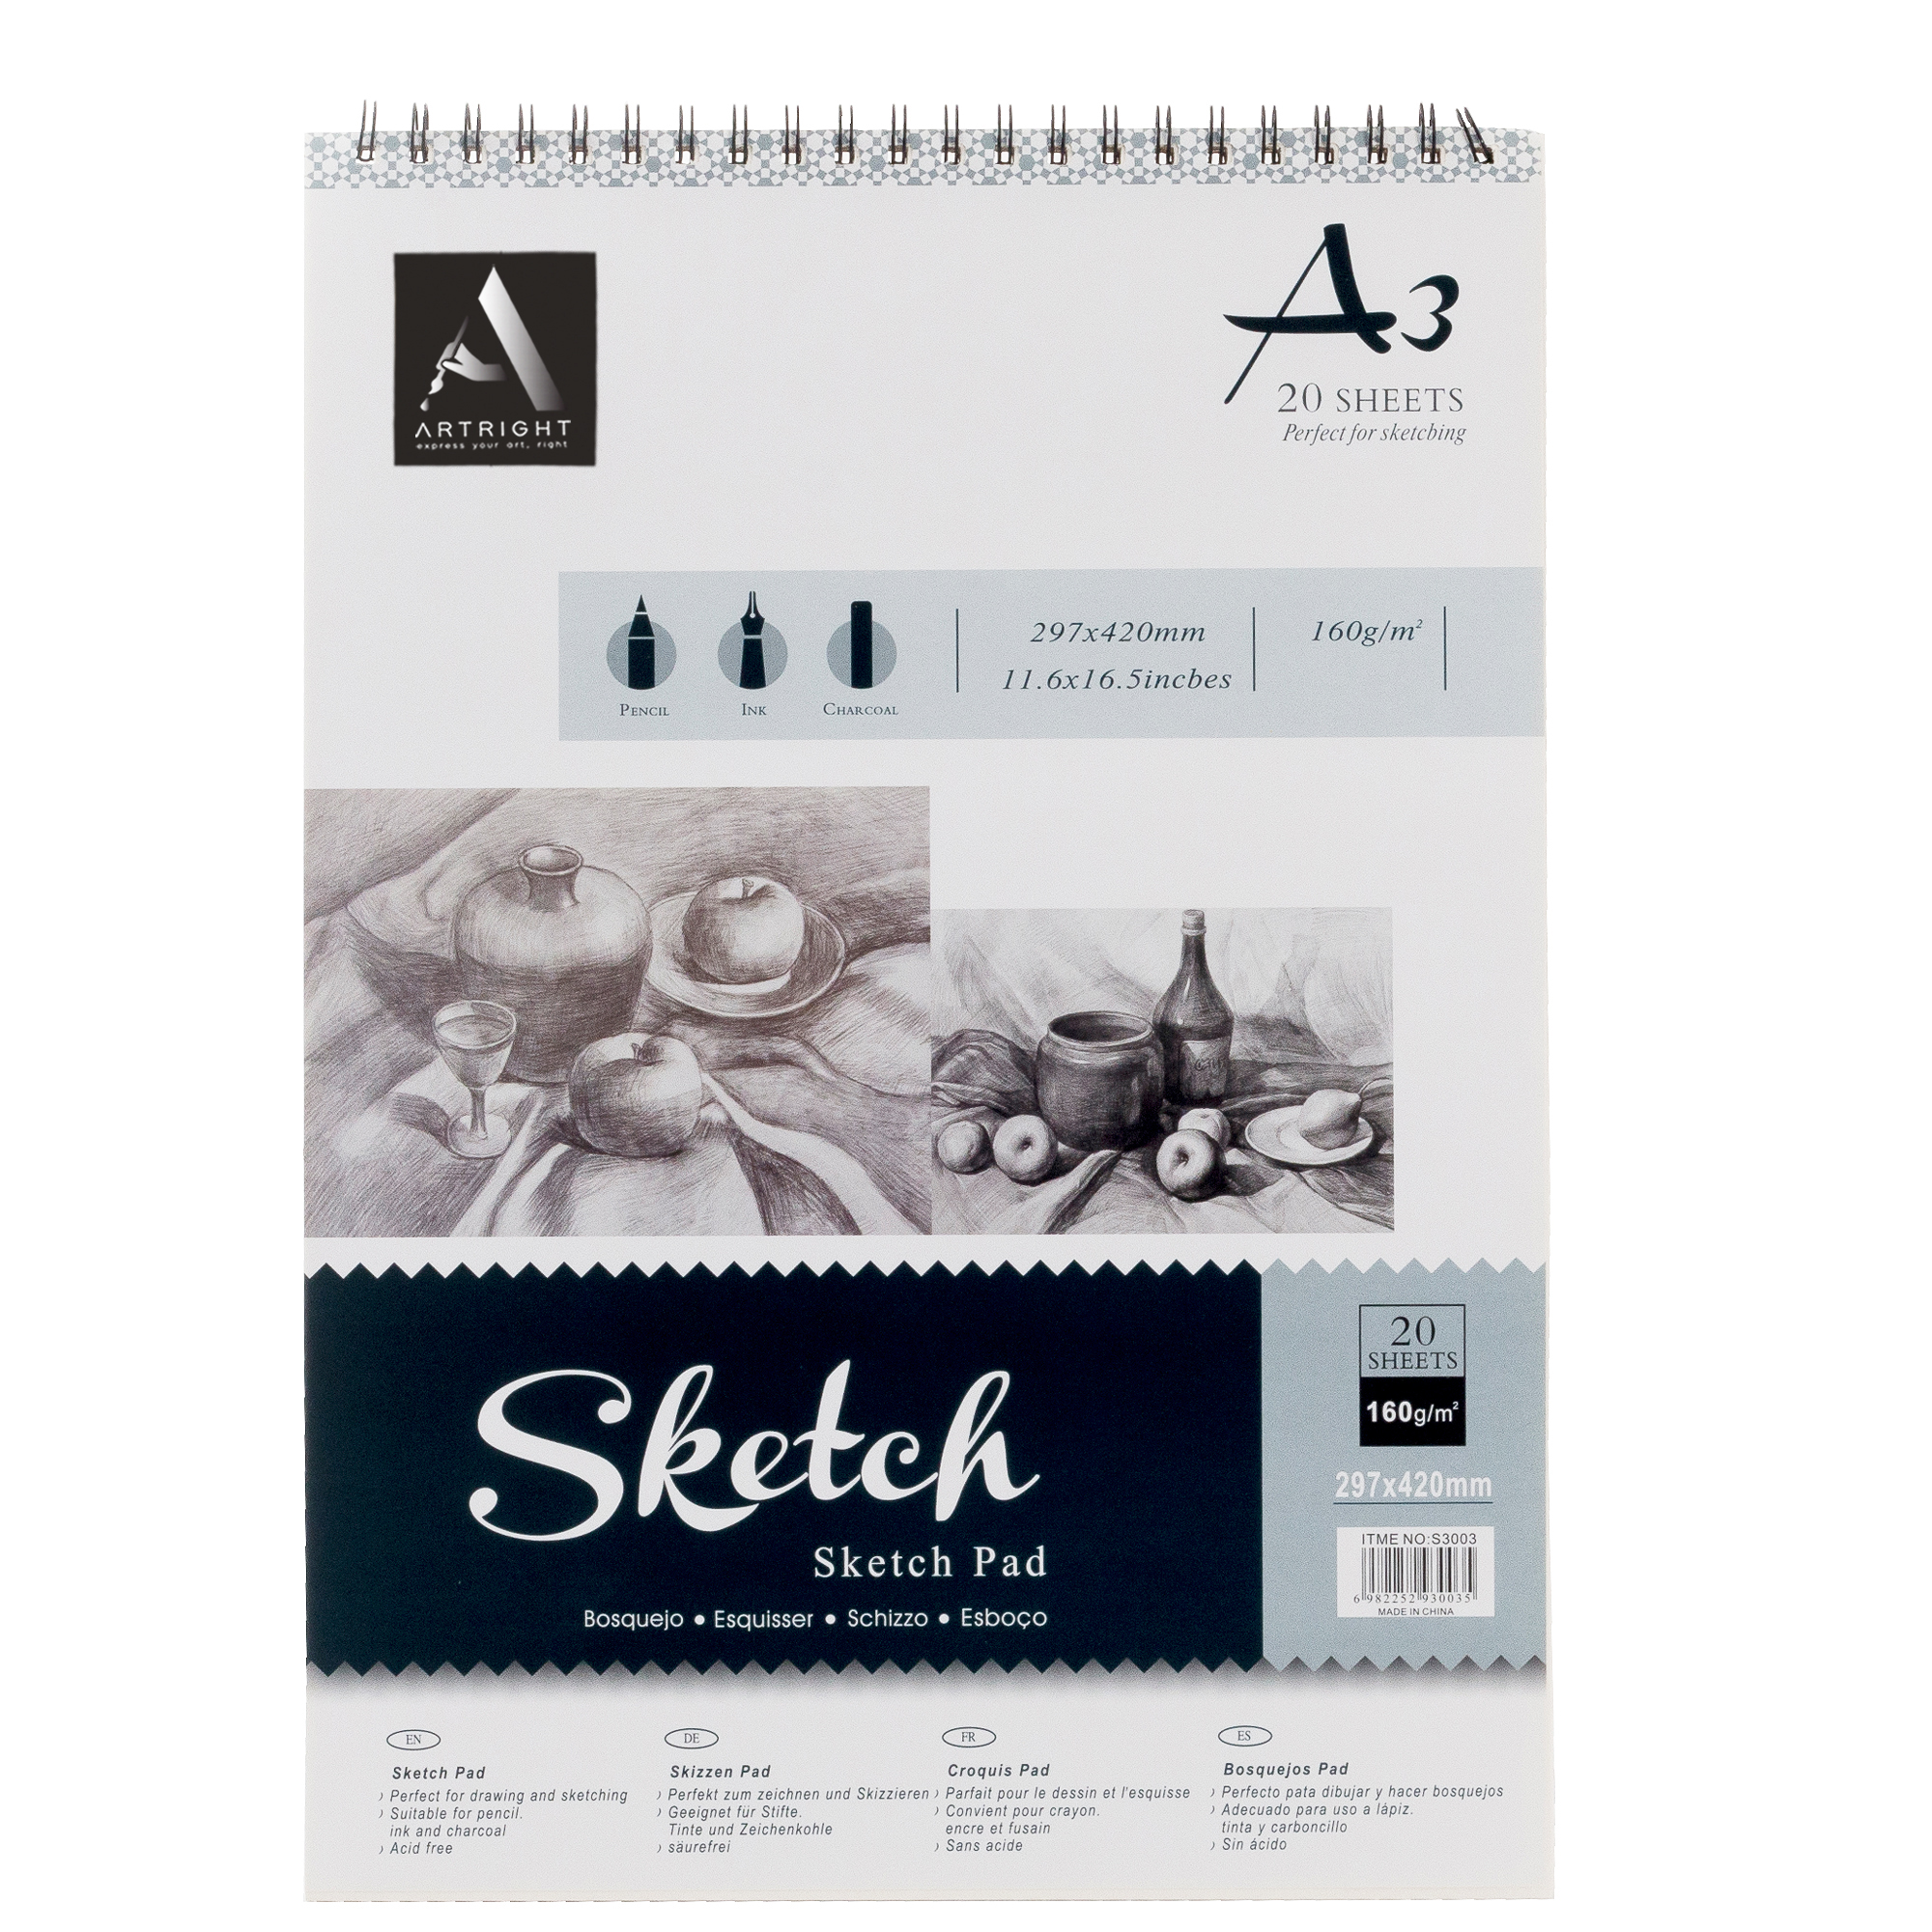 Buy A4 Sketch Binder Pad White Paper 160g 24 Sheet Sketching & Drawing Acid Free  Online | Kogan.com. .